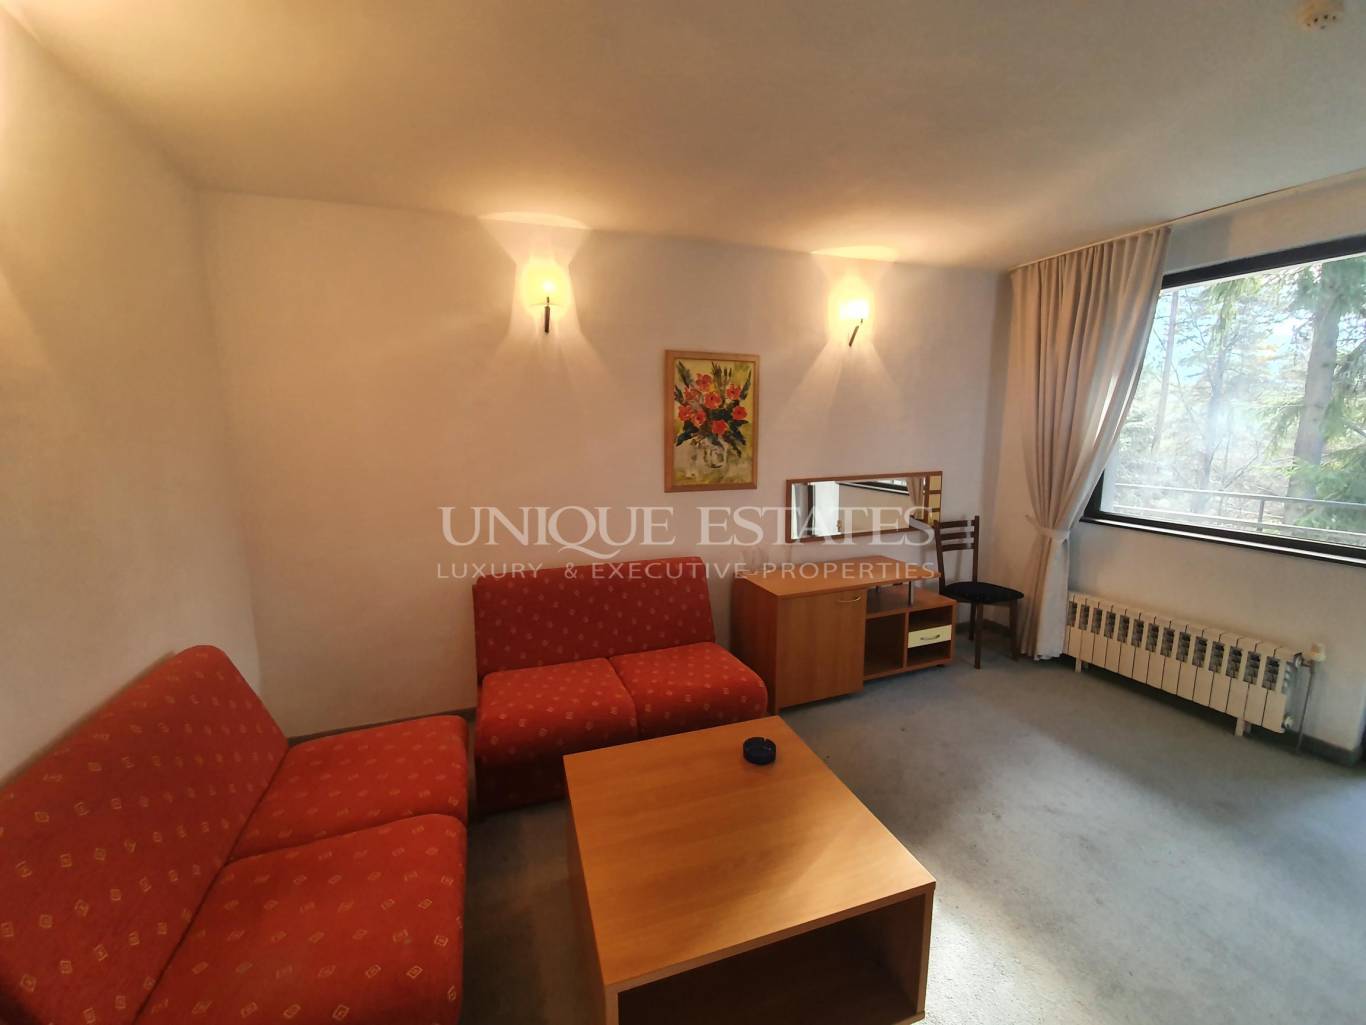 Хотел / Apartment house за продажба в Боровец,  - код на имота: K13370 - image 4